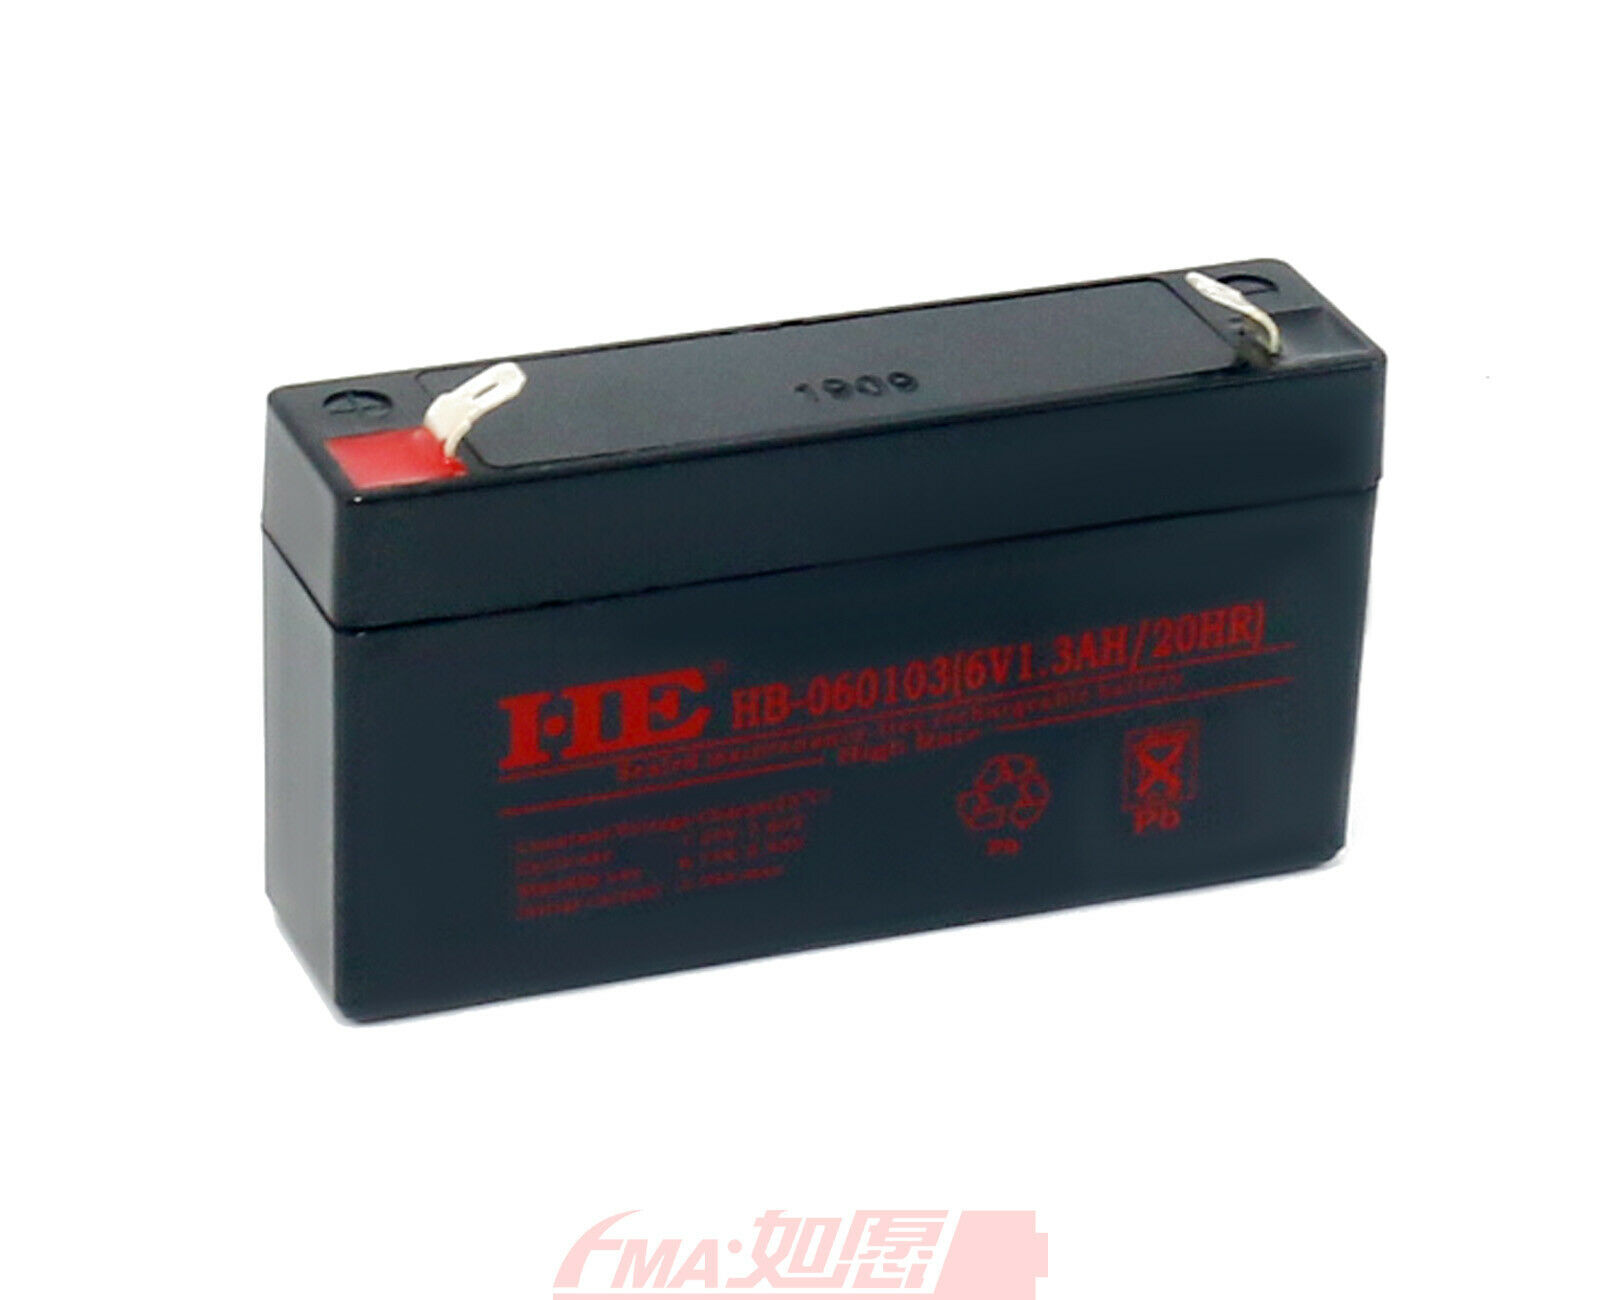 SLA Sealed Lead Acid Battery 6V 1.3Ah For Exit Backup Power Emergency Light